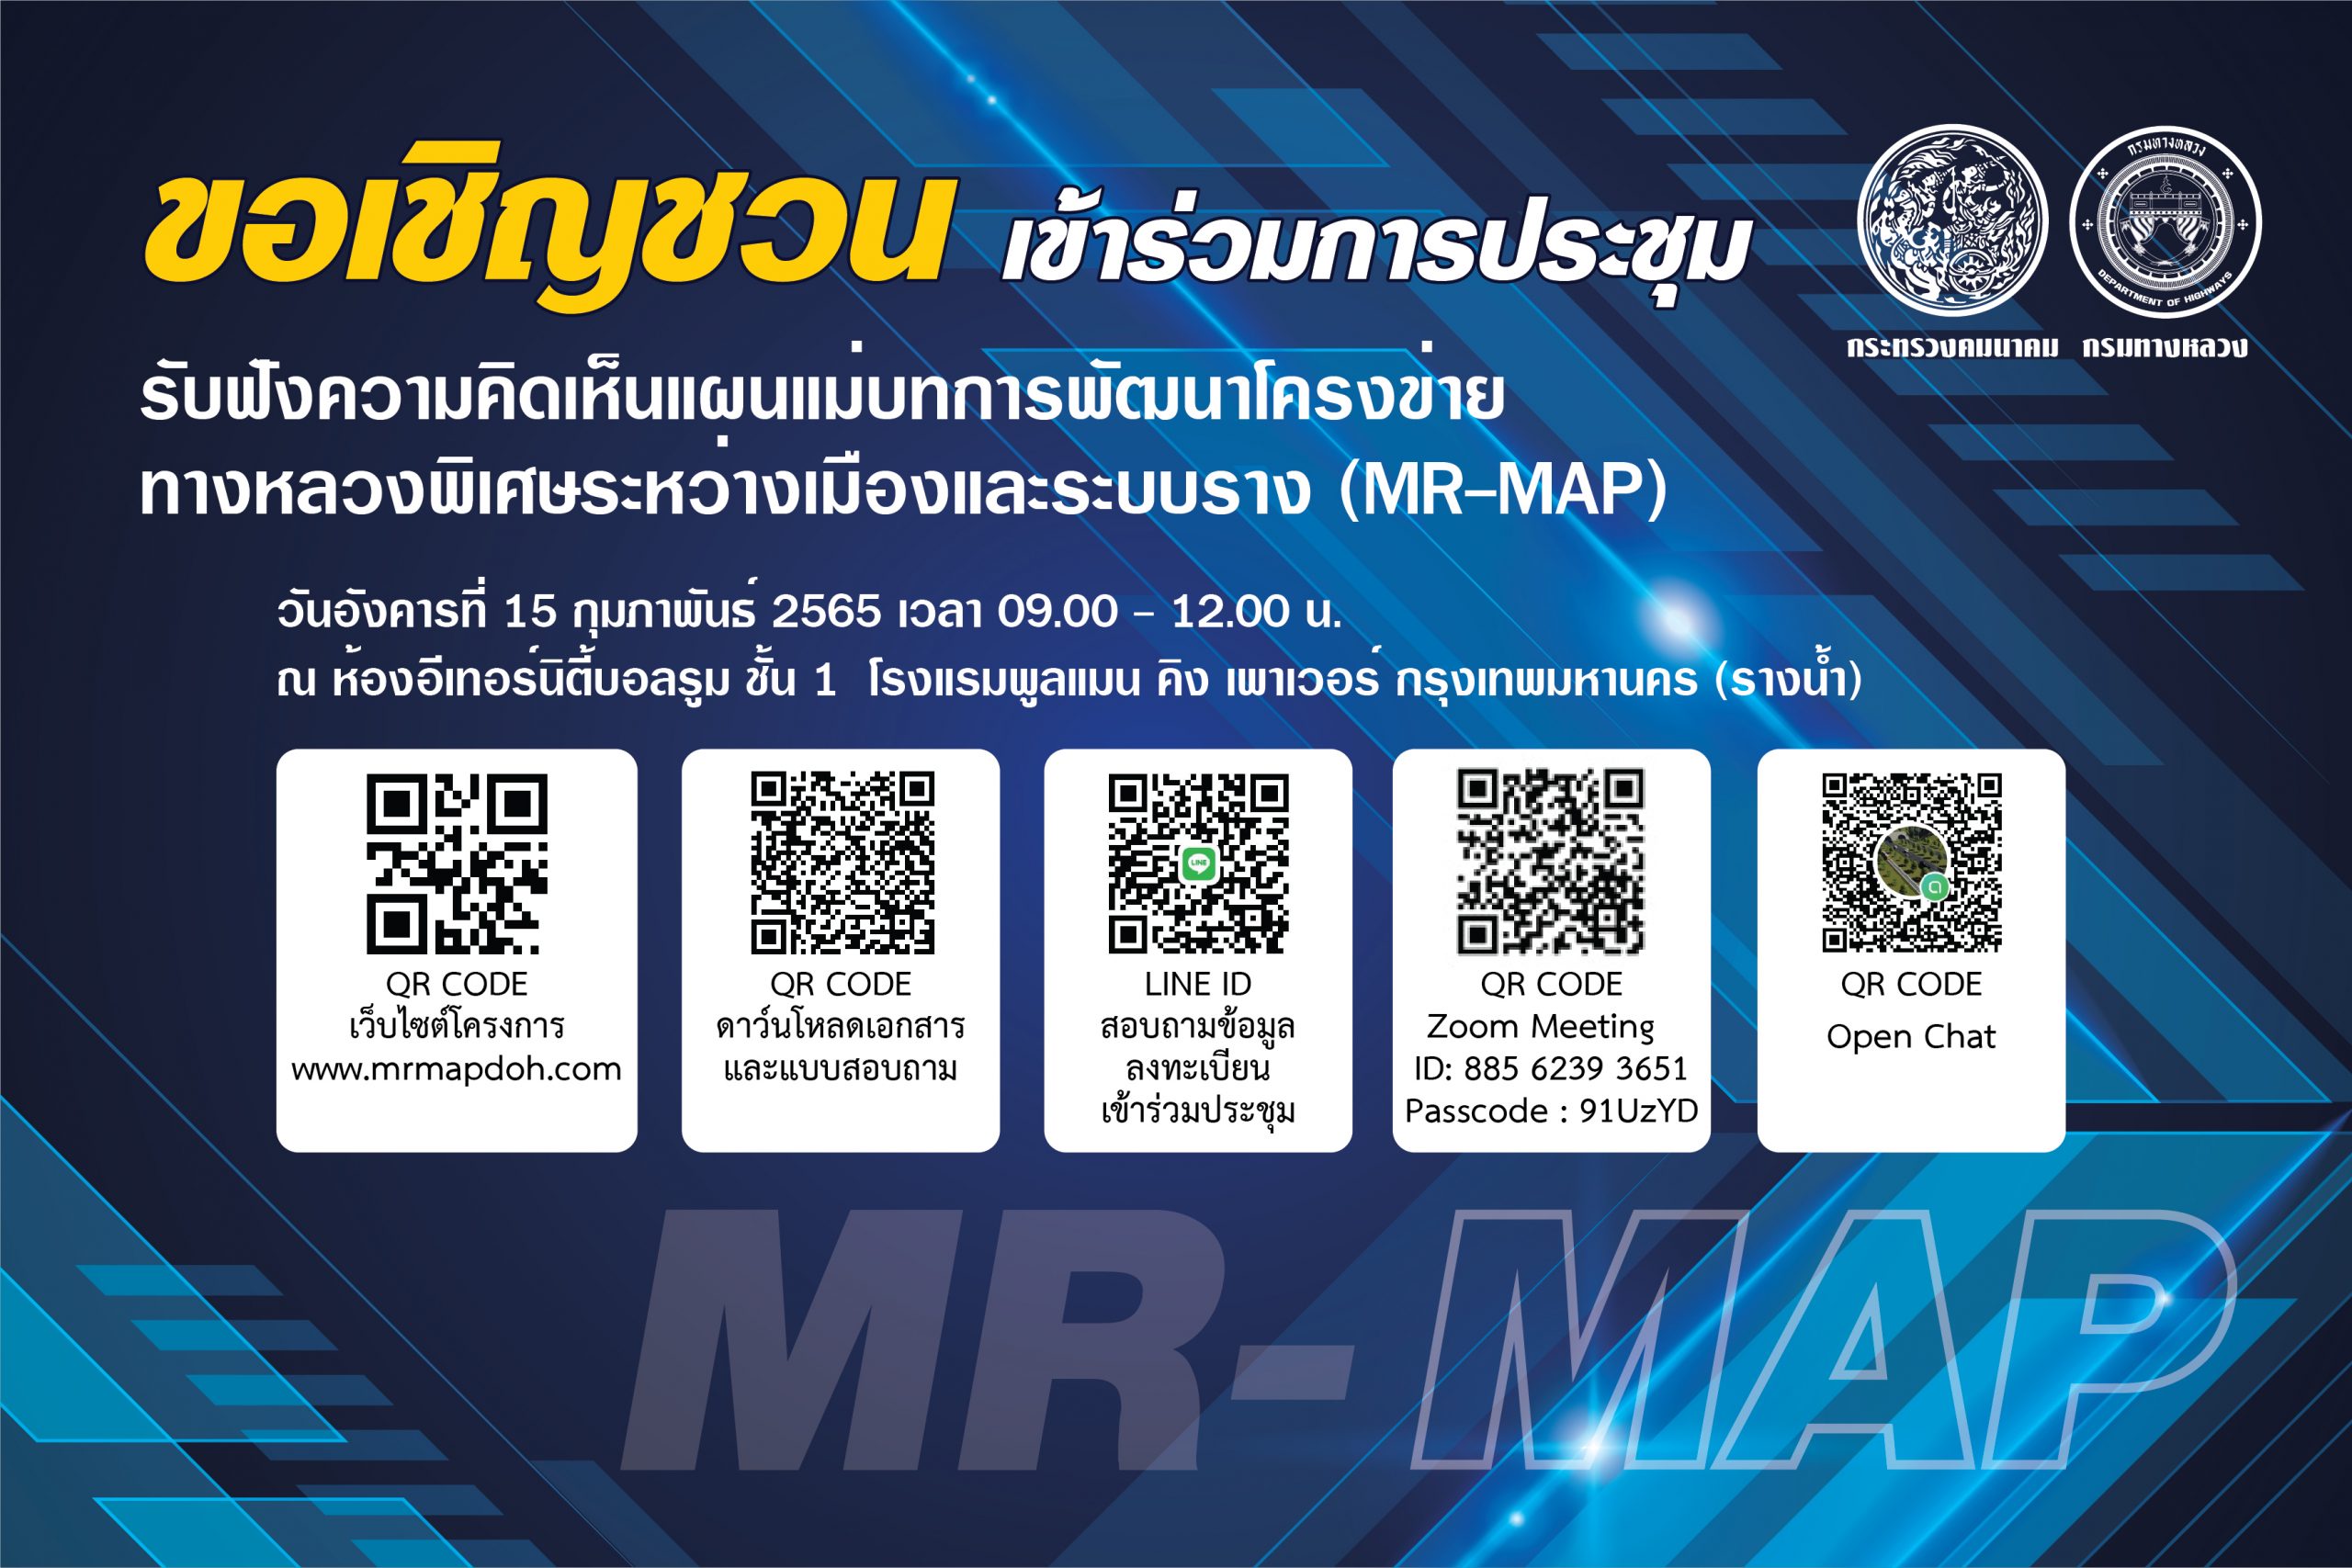 ป้ายเชิญประชุม mr-map 02